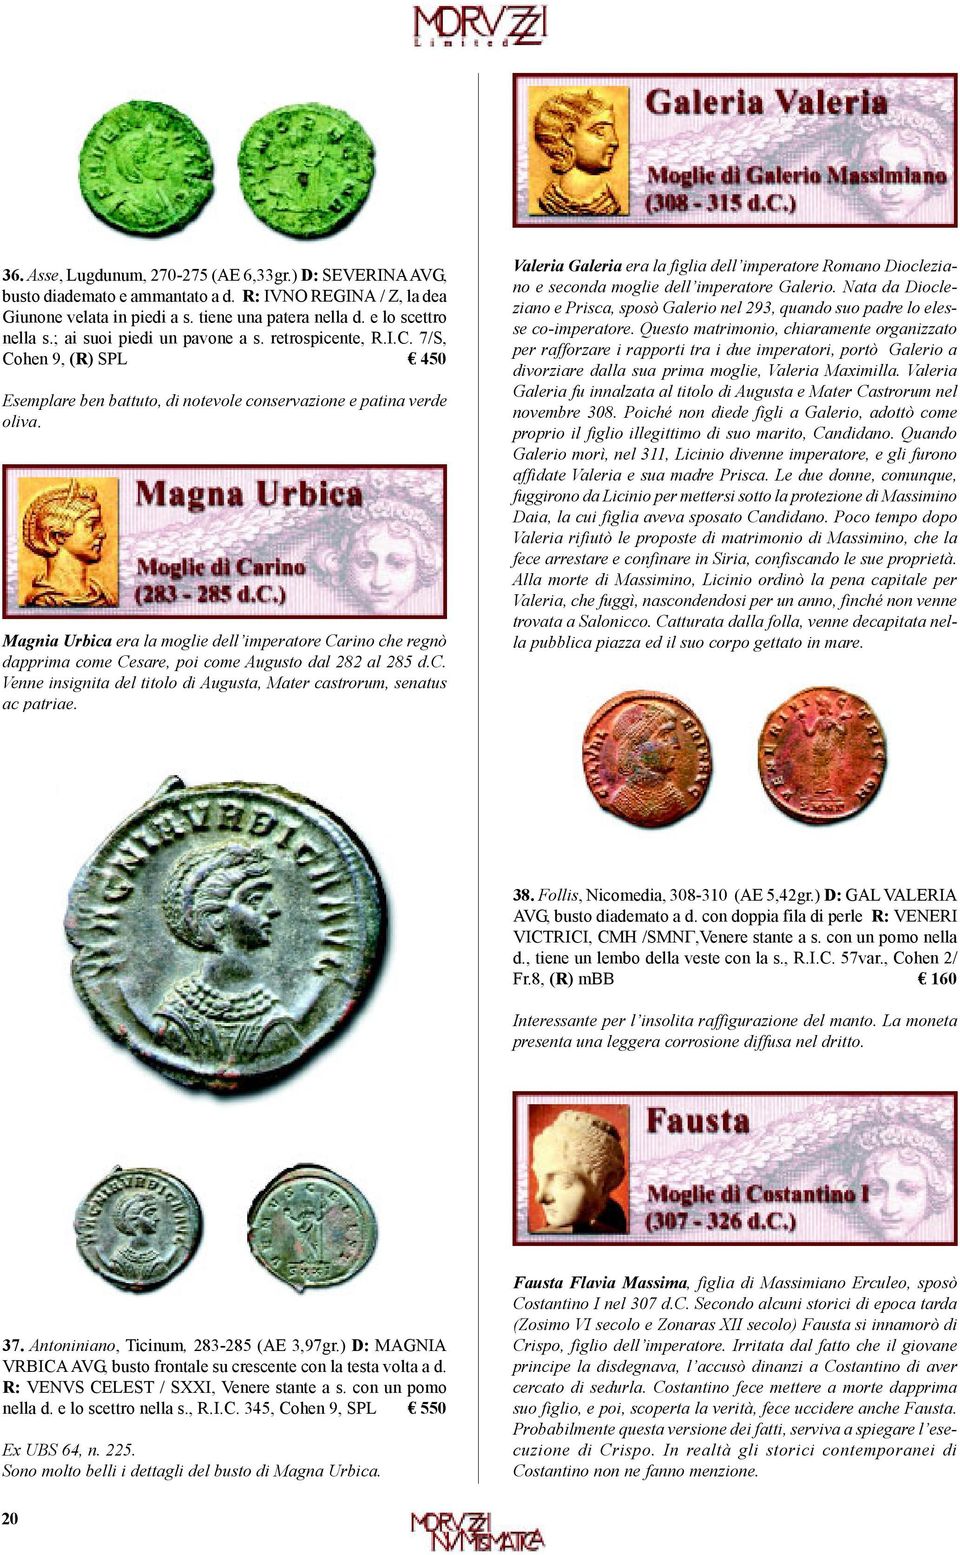 Magnia Urbica era la moglie dell imperatore Carino che regnò dapprima come Cesare, poi come Augusto dal 282 al 285 d.c. Venne insignita del titolo di Augusta, Mater castrorum, senatus ac patriae.